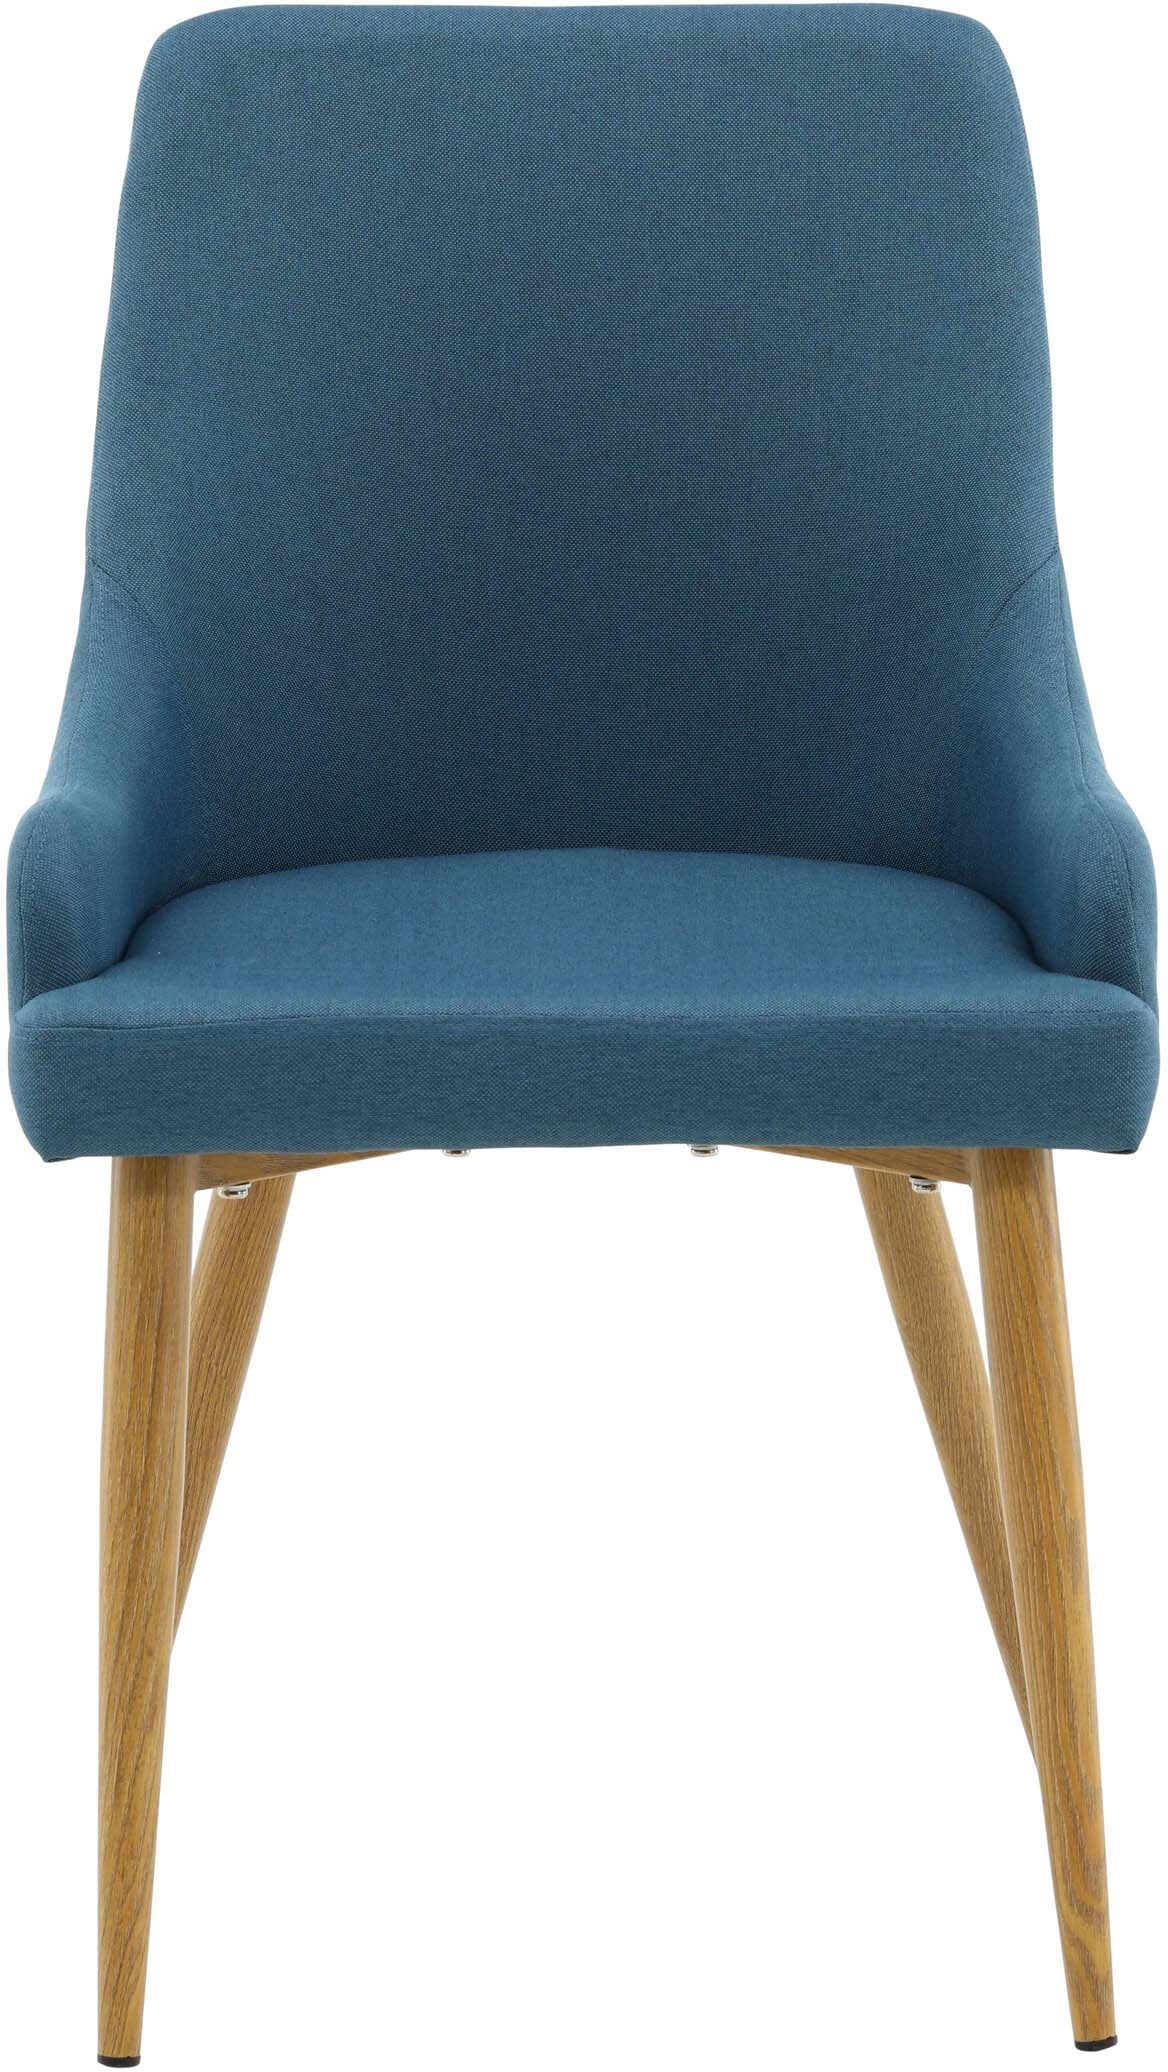 Plaza Stuhl in Blau / Natur präsentiert im Onlineshop von KAQTU Design AG. Stuhl ist von Venture Home